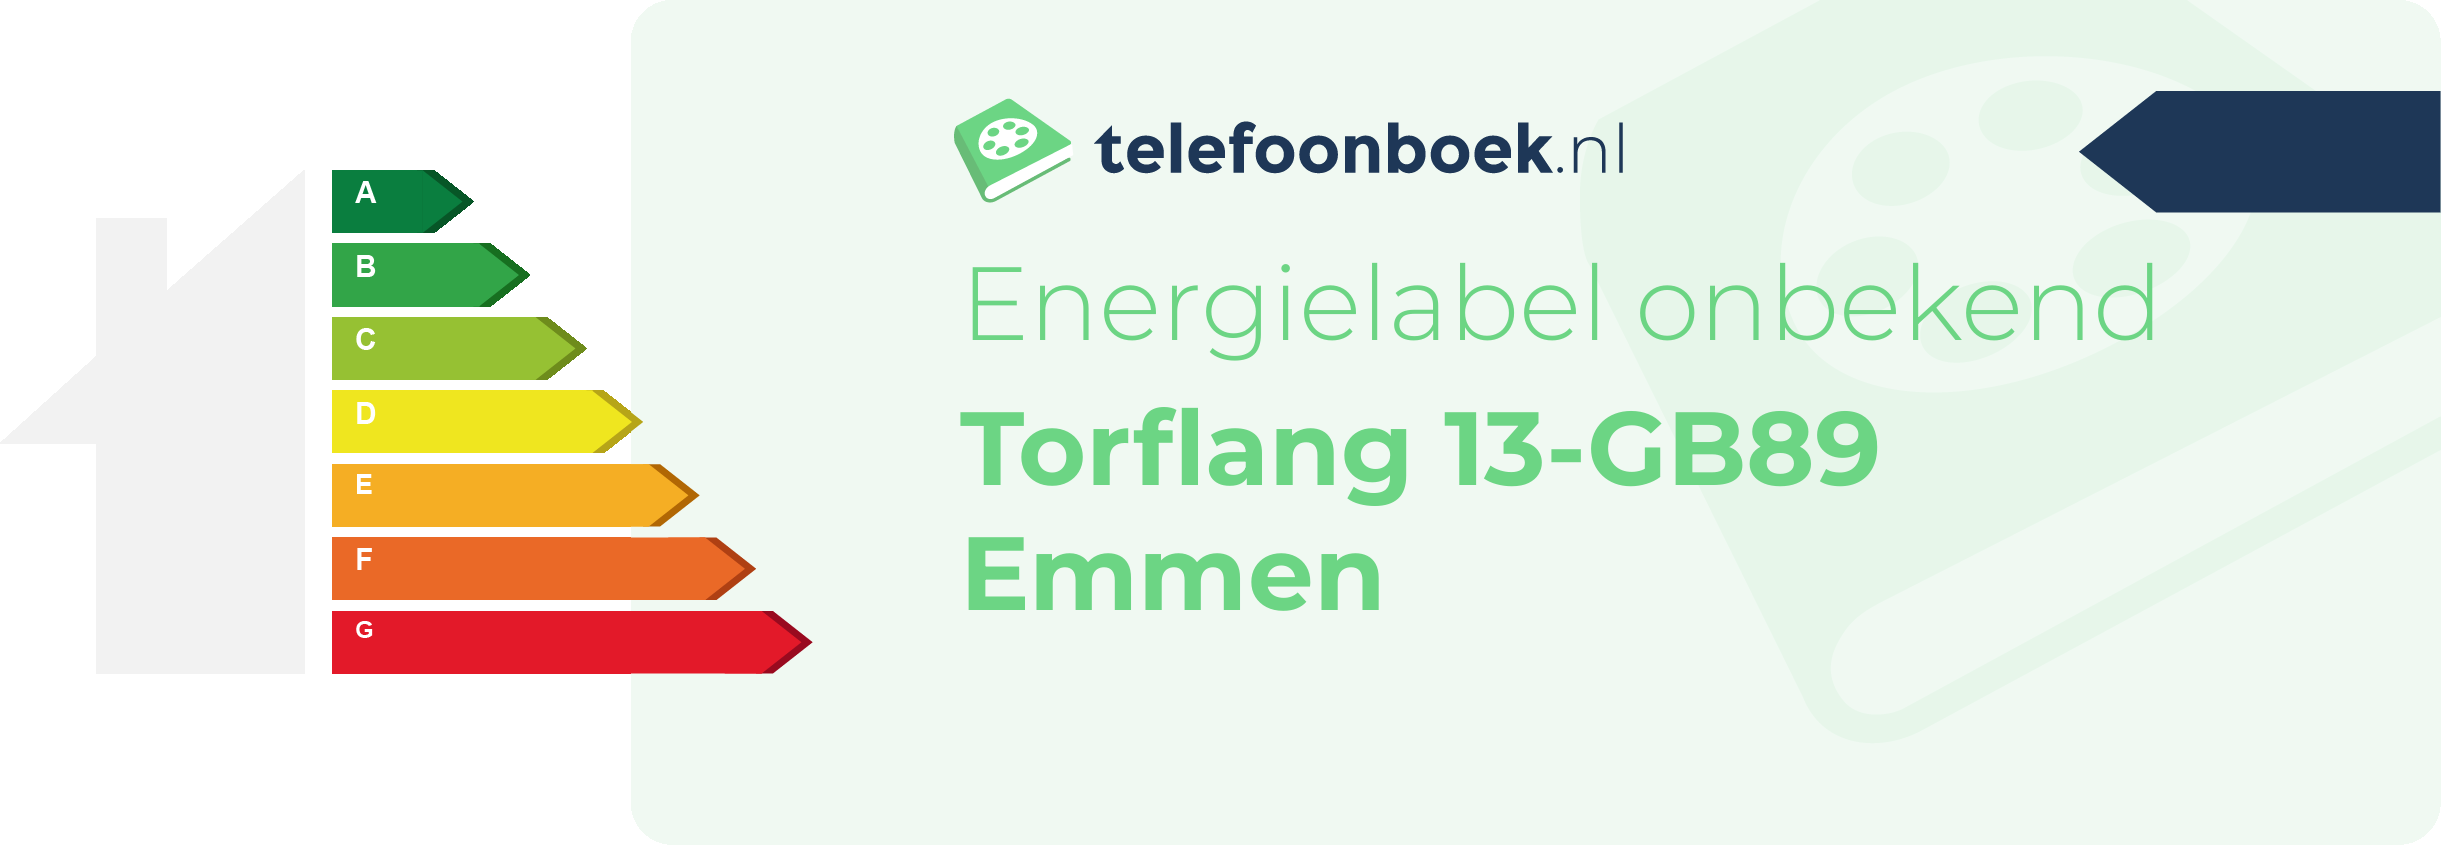 Energielabel Torflang 13-GB89 Emmen